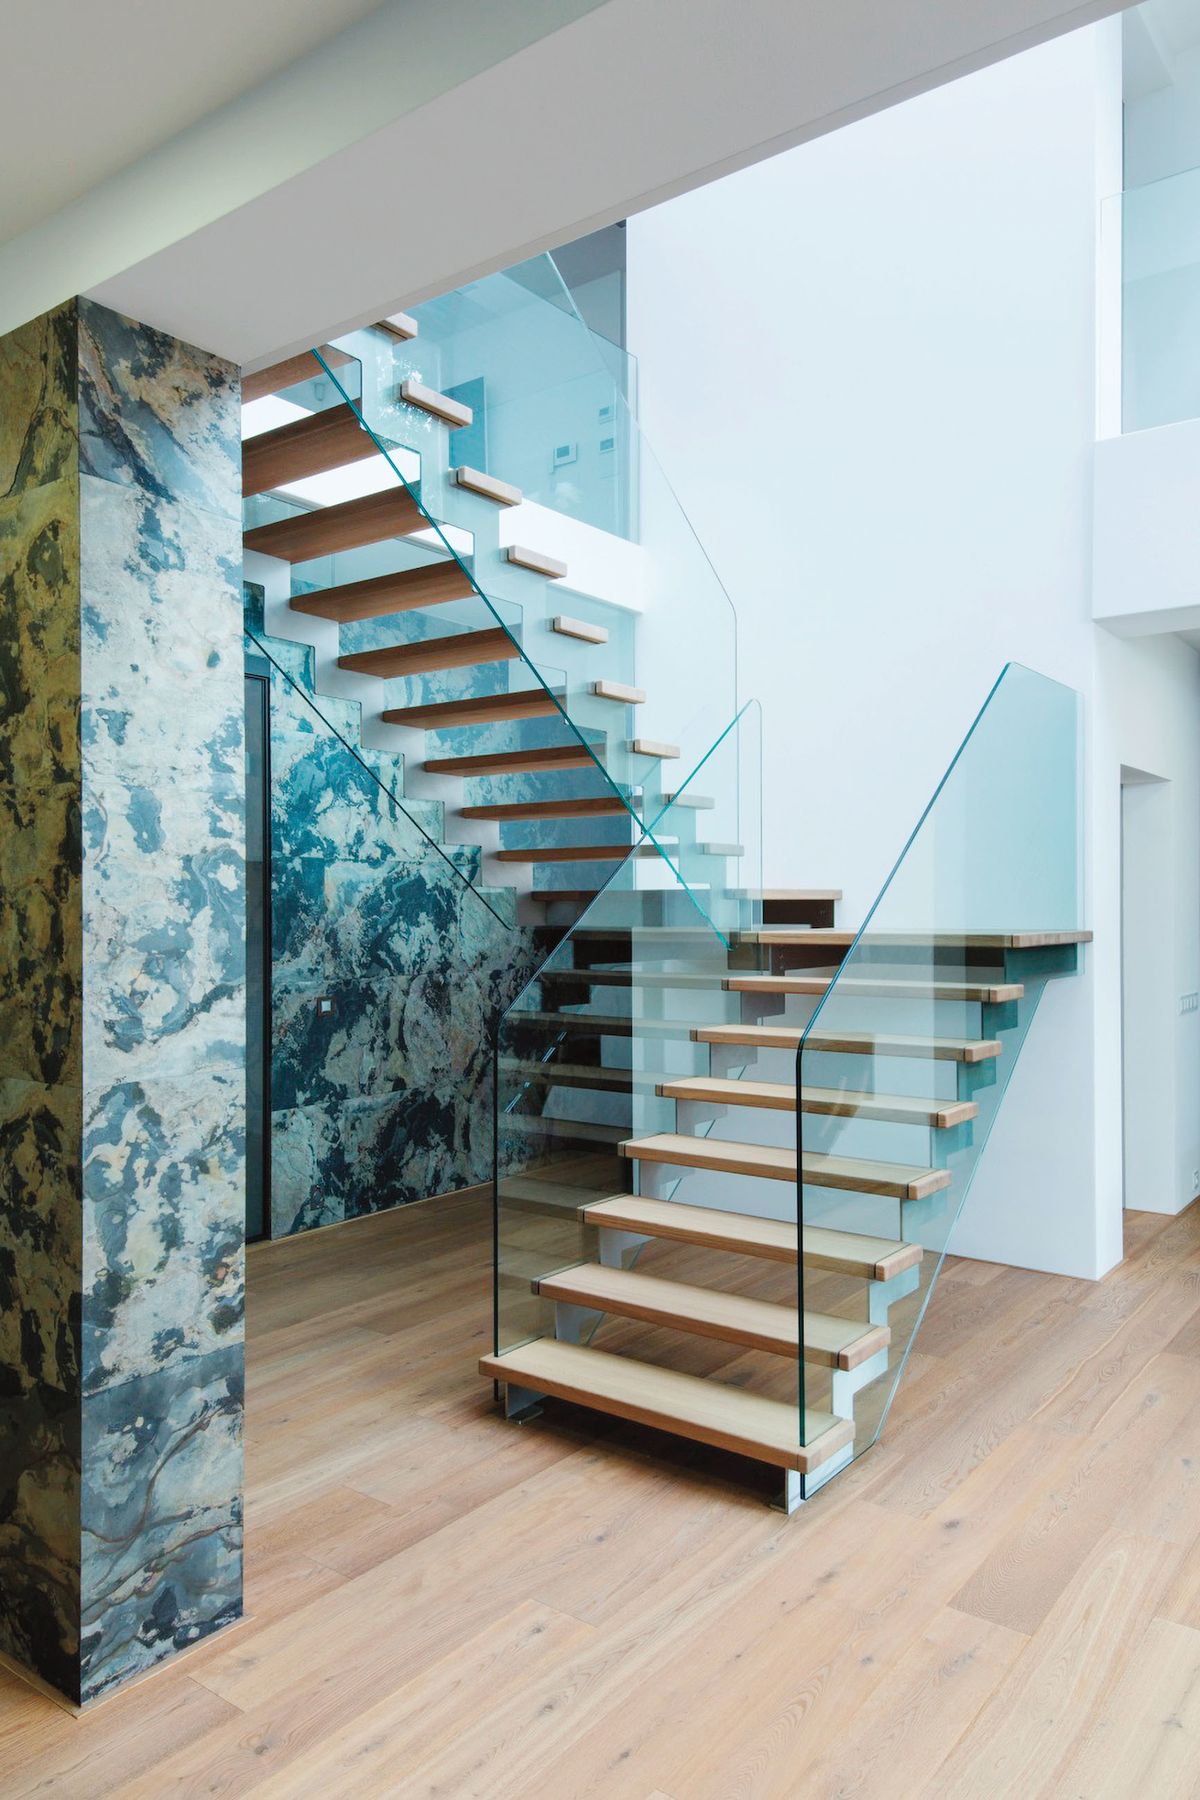 Skleněná výplň místo klasického zábradlí odlehčuje celkový dojem ze segmentového schodiště, prosvětluje efektně prostor.